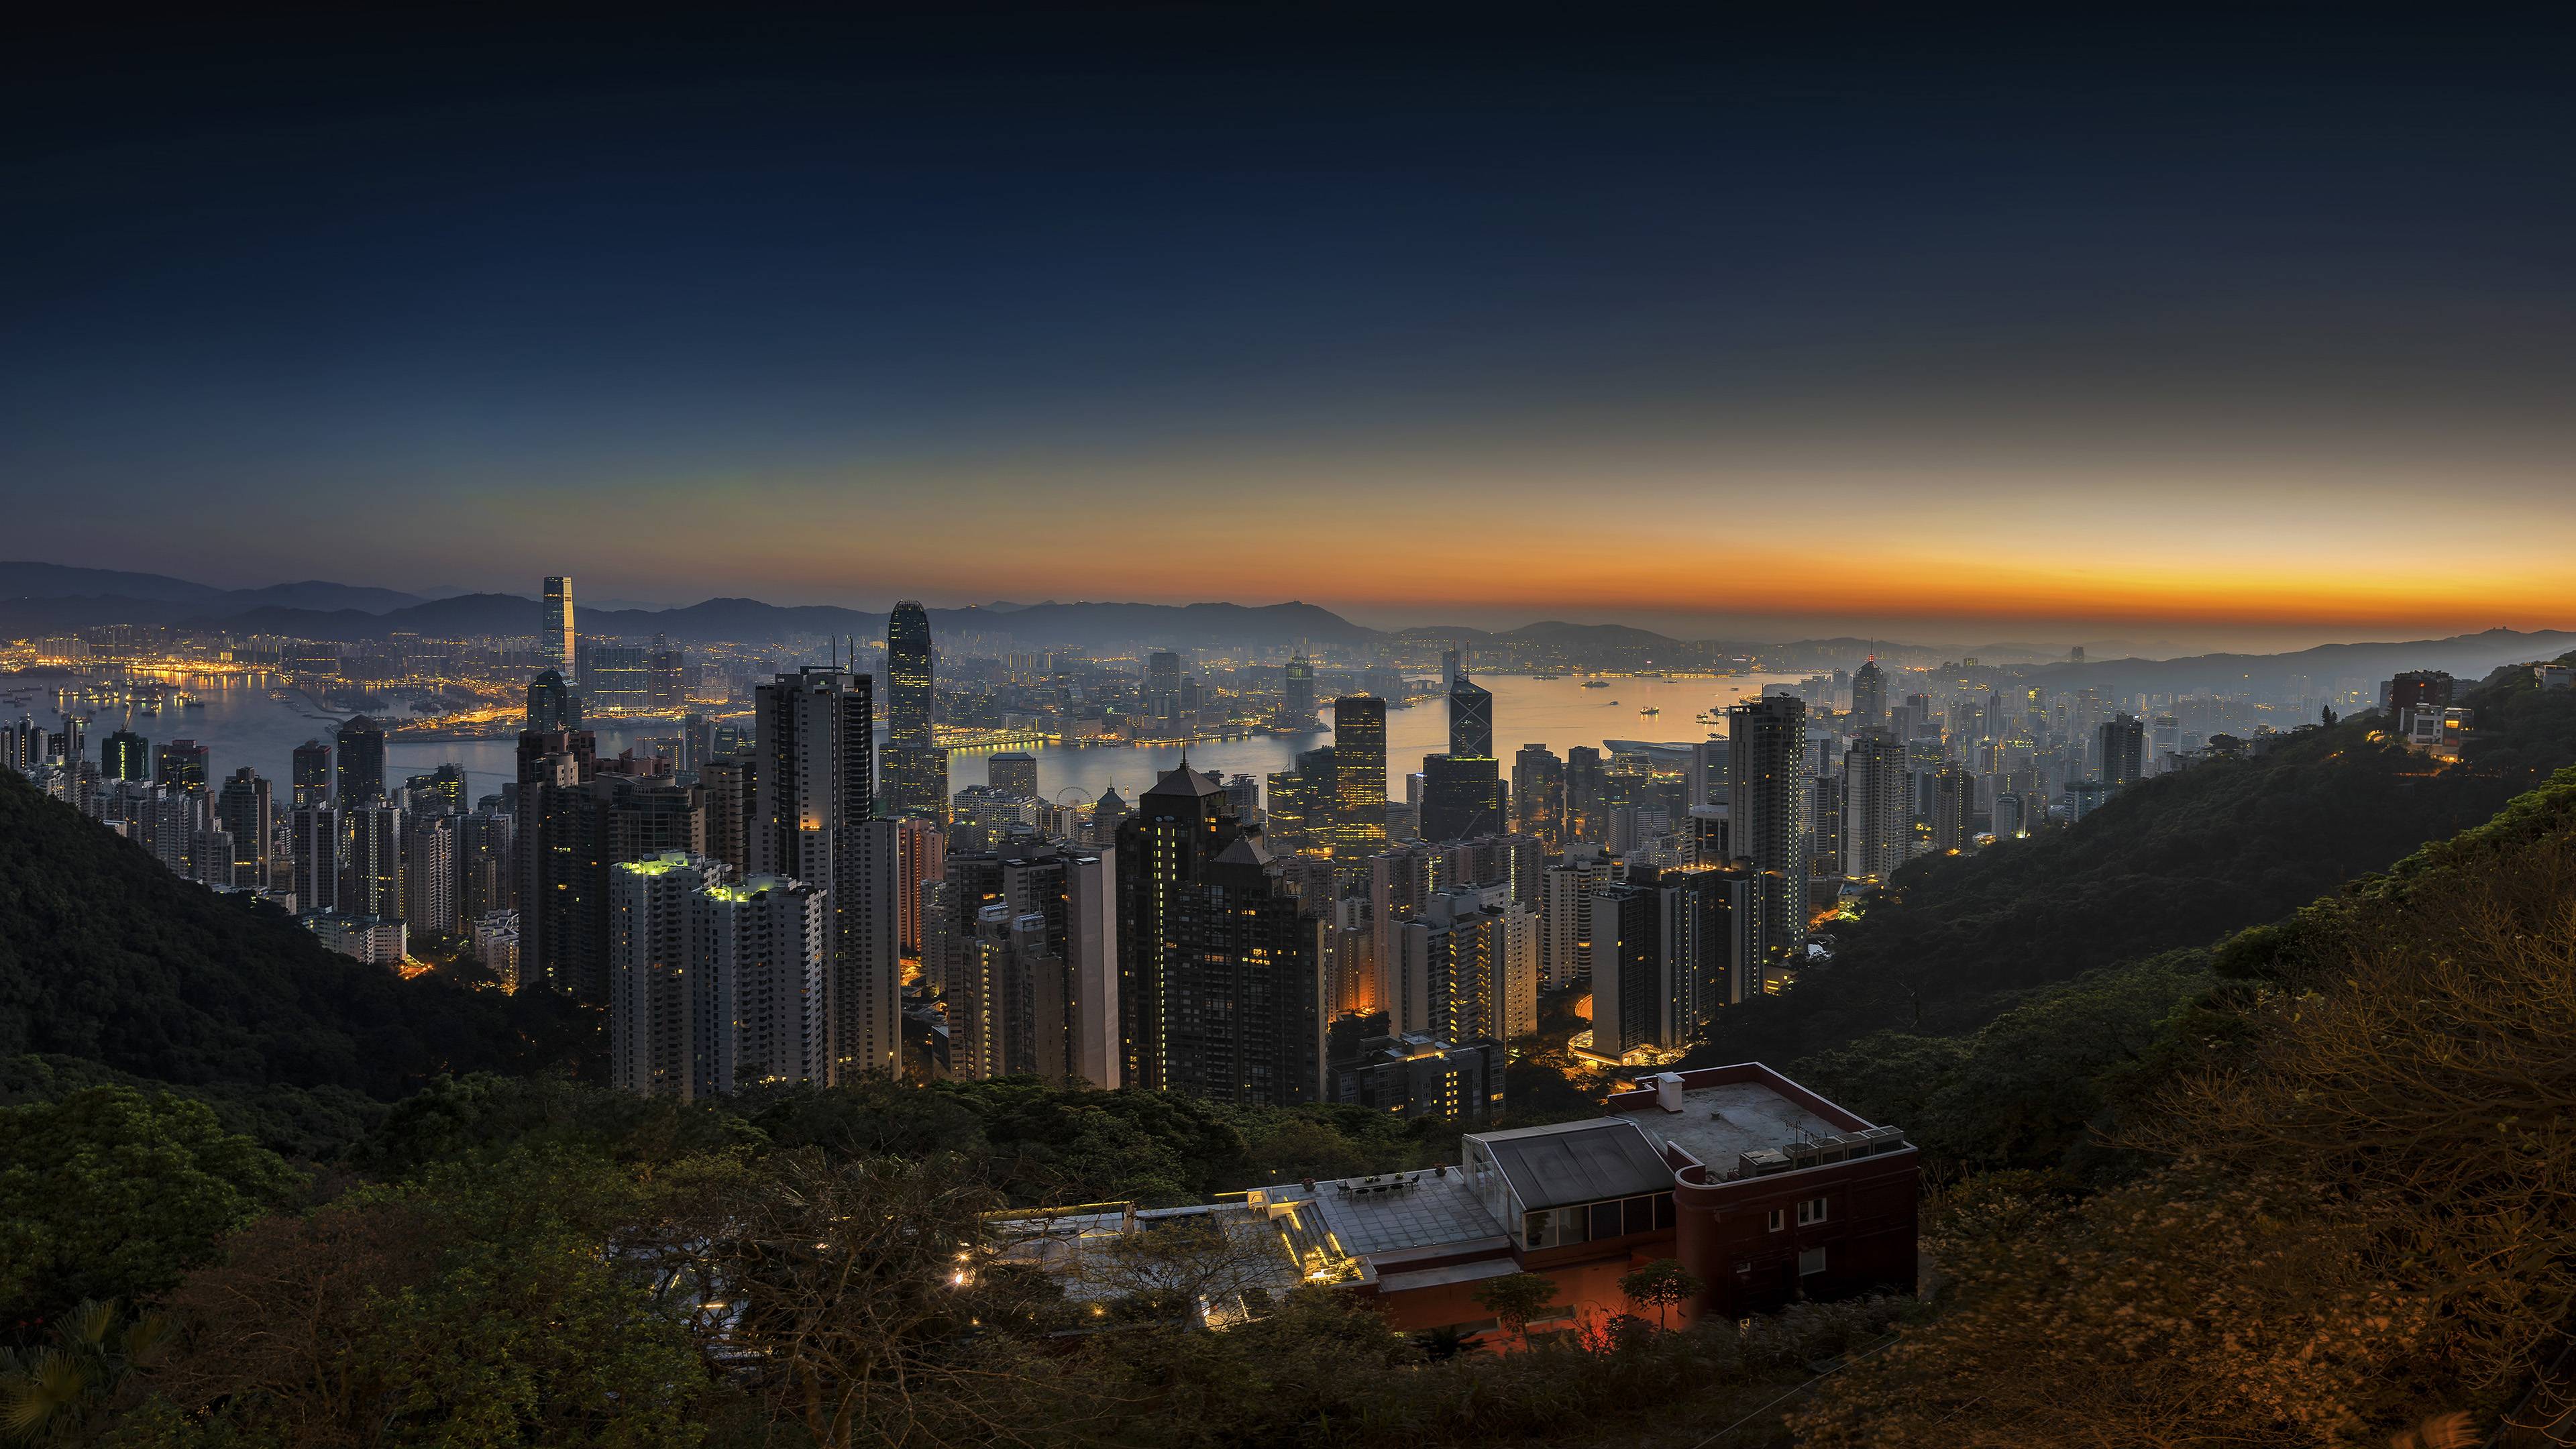 3840x2160] Hong Kong At Sunrise [4K] R Wallpaper